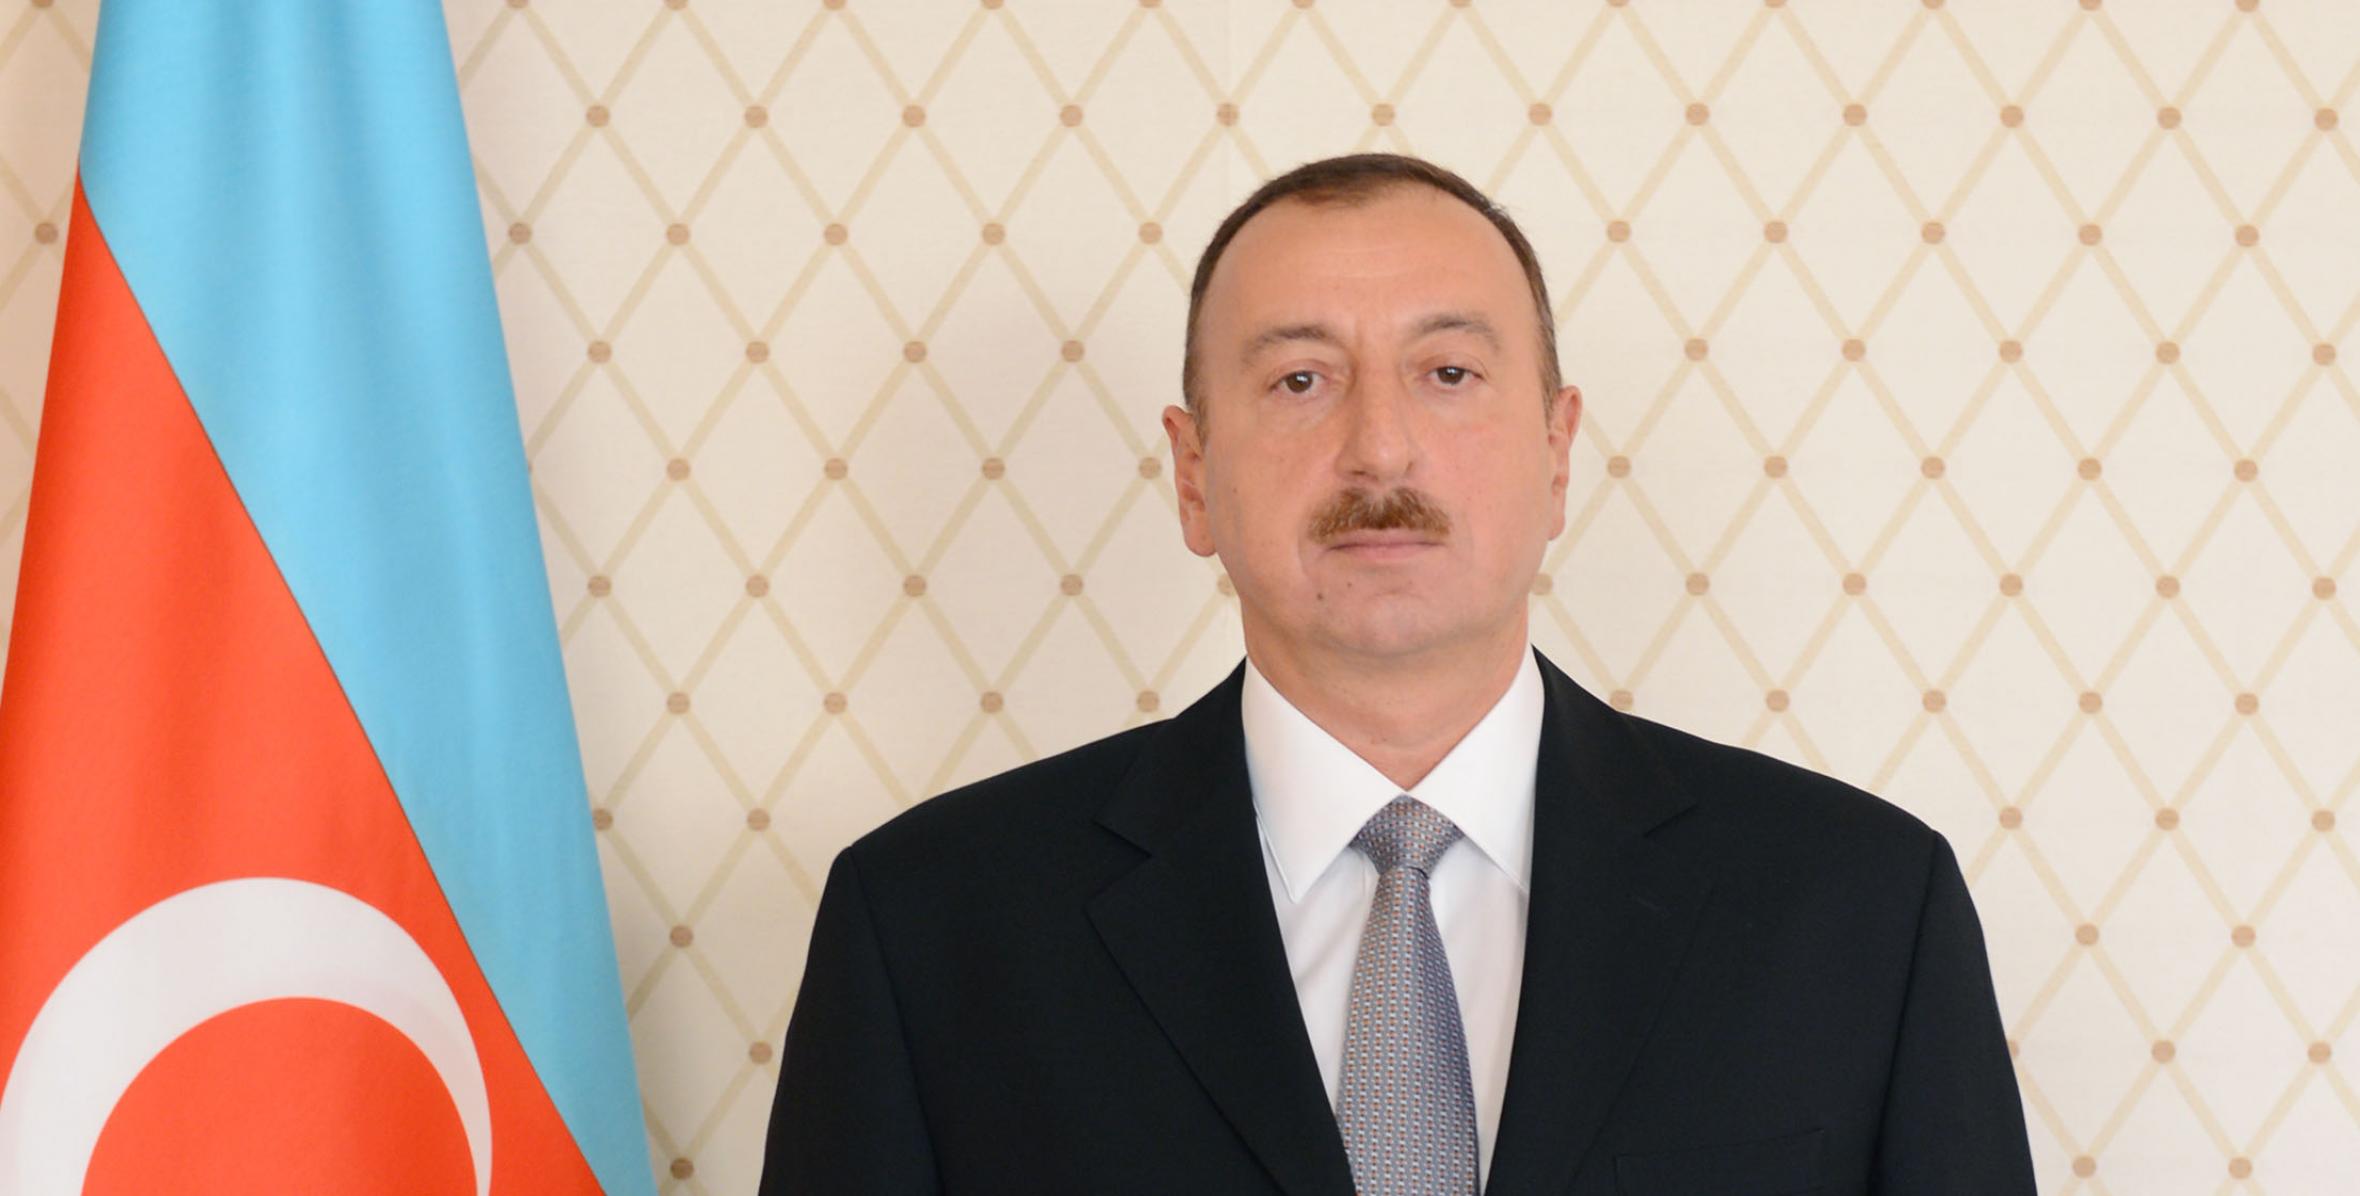 Ильхам Алиев поздравил азербайджанский народ по случаю решения Европейского Олимпийского Комитета о проведении в 2015 году в Баку первых Европейских Олимпийских игр